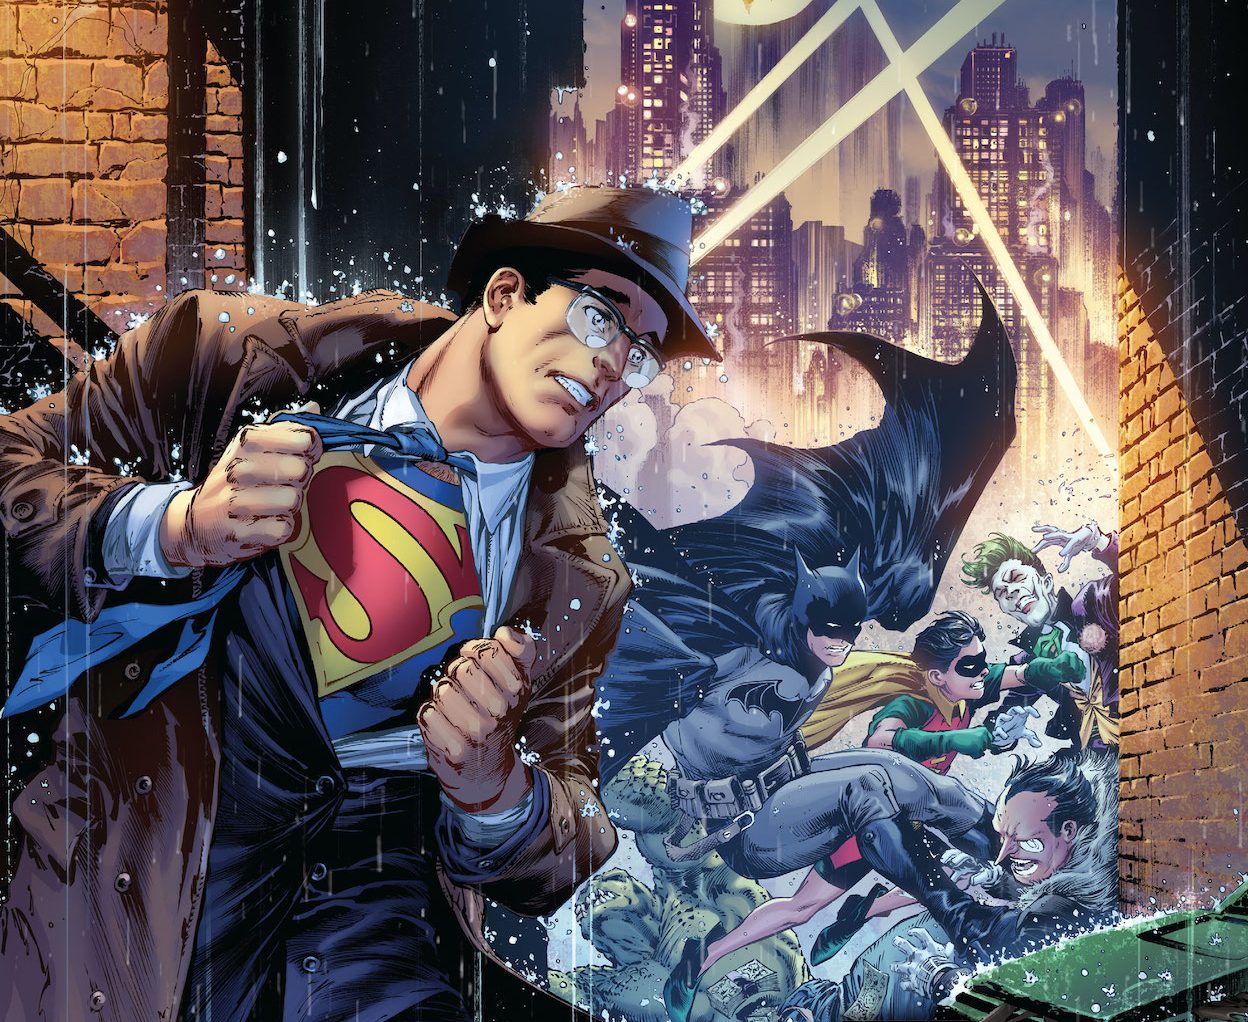 Batman/Superman #17